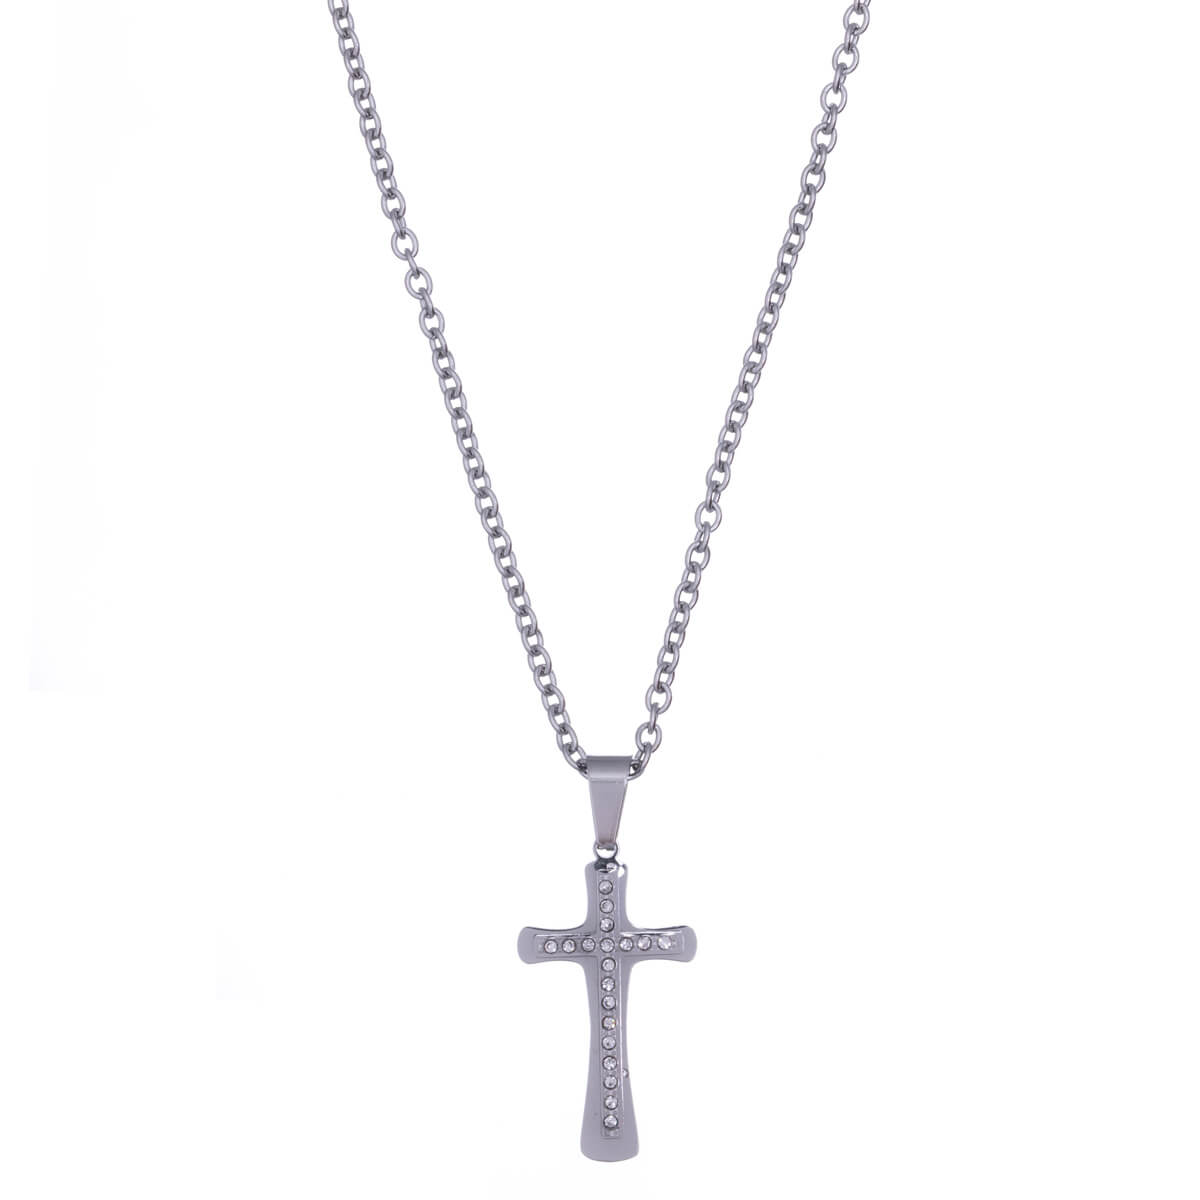 Stone cross pendant steel necklace 60cm (Steel 316L)